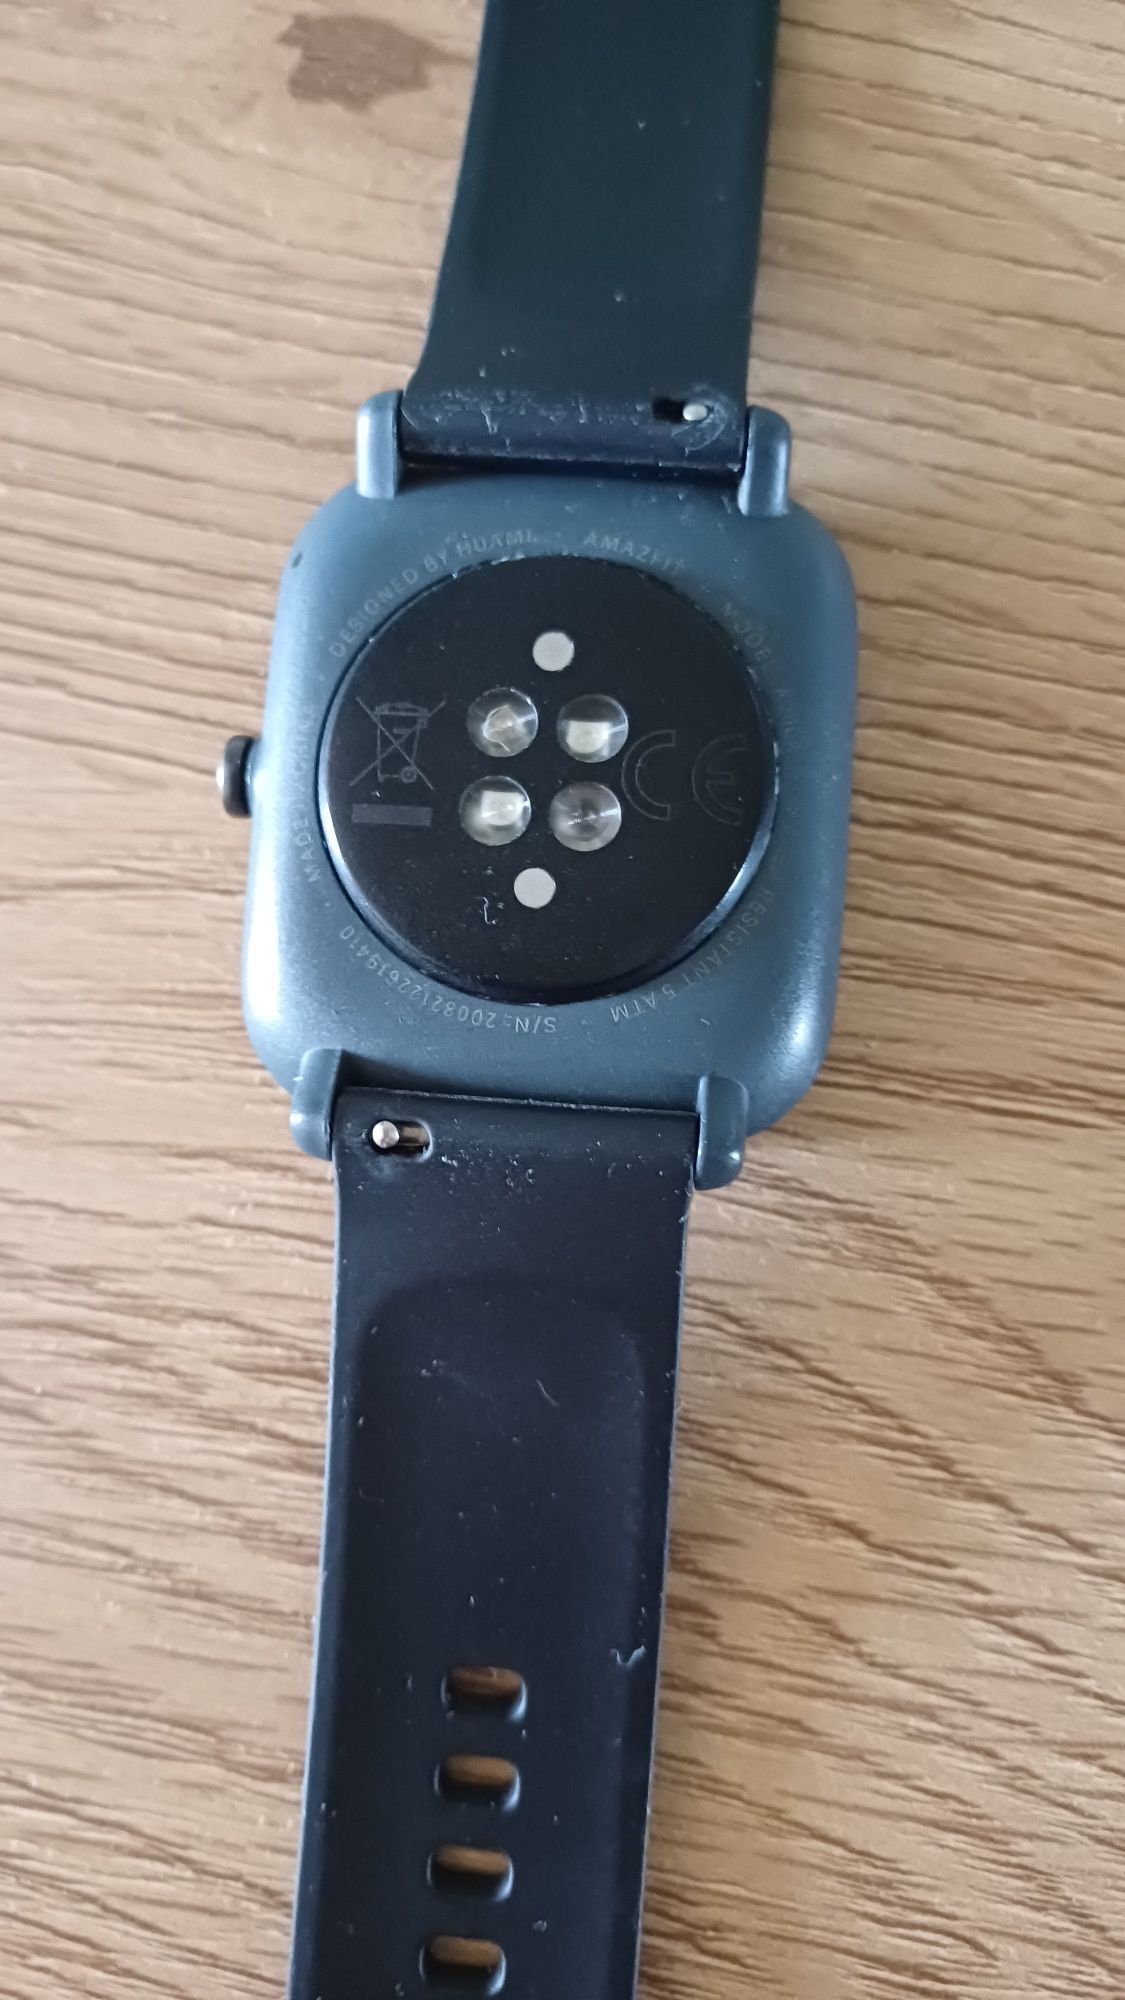 Смарт часы Amazfit Bip U Pro с GPS + 4 ремешка в подарок